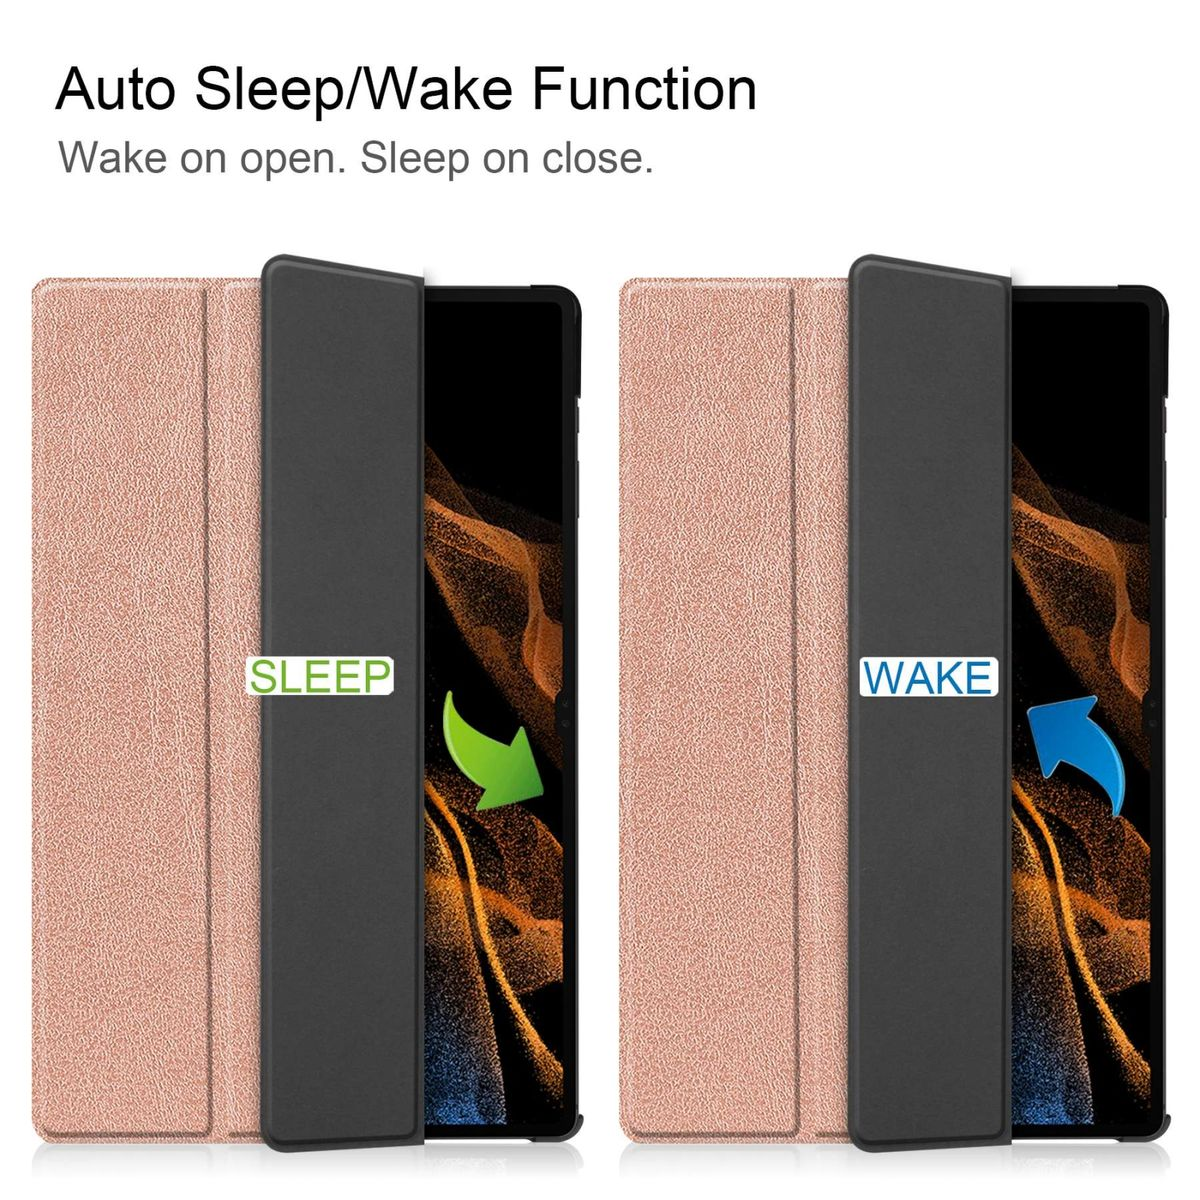 WIGENTO 3folt Cover Gold / Full aufstellbar Samsung für Wake Sleep Smart Cover / Silikon & Rose Kunstleder, UP Kunststoff Tablethülle